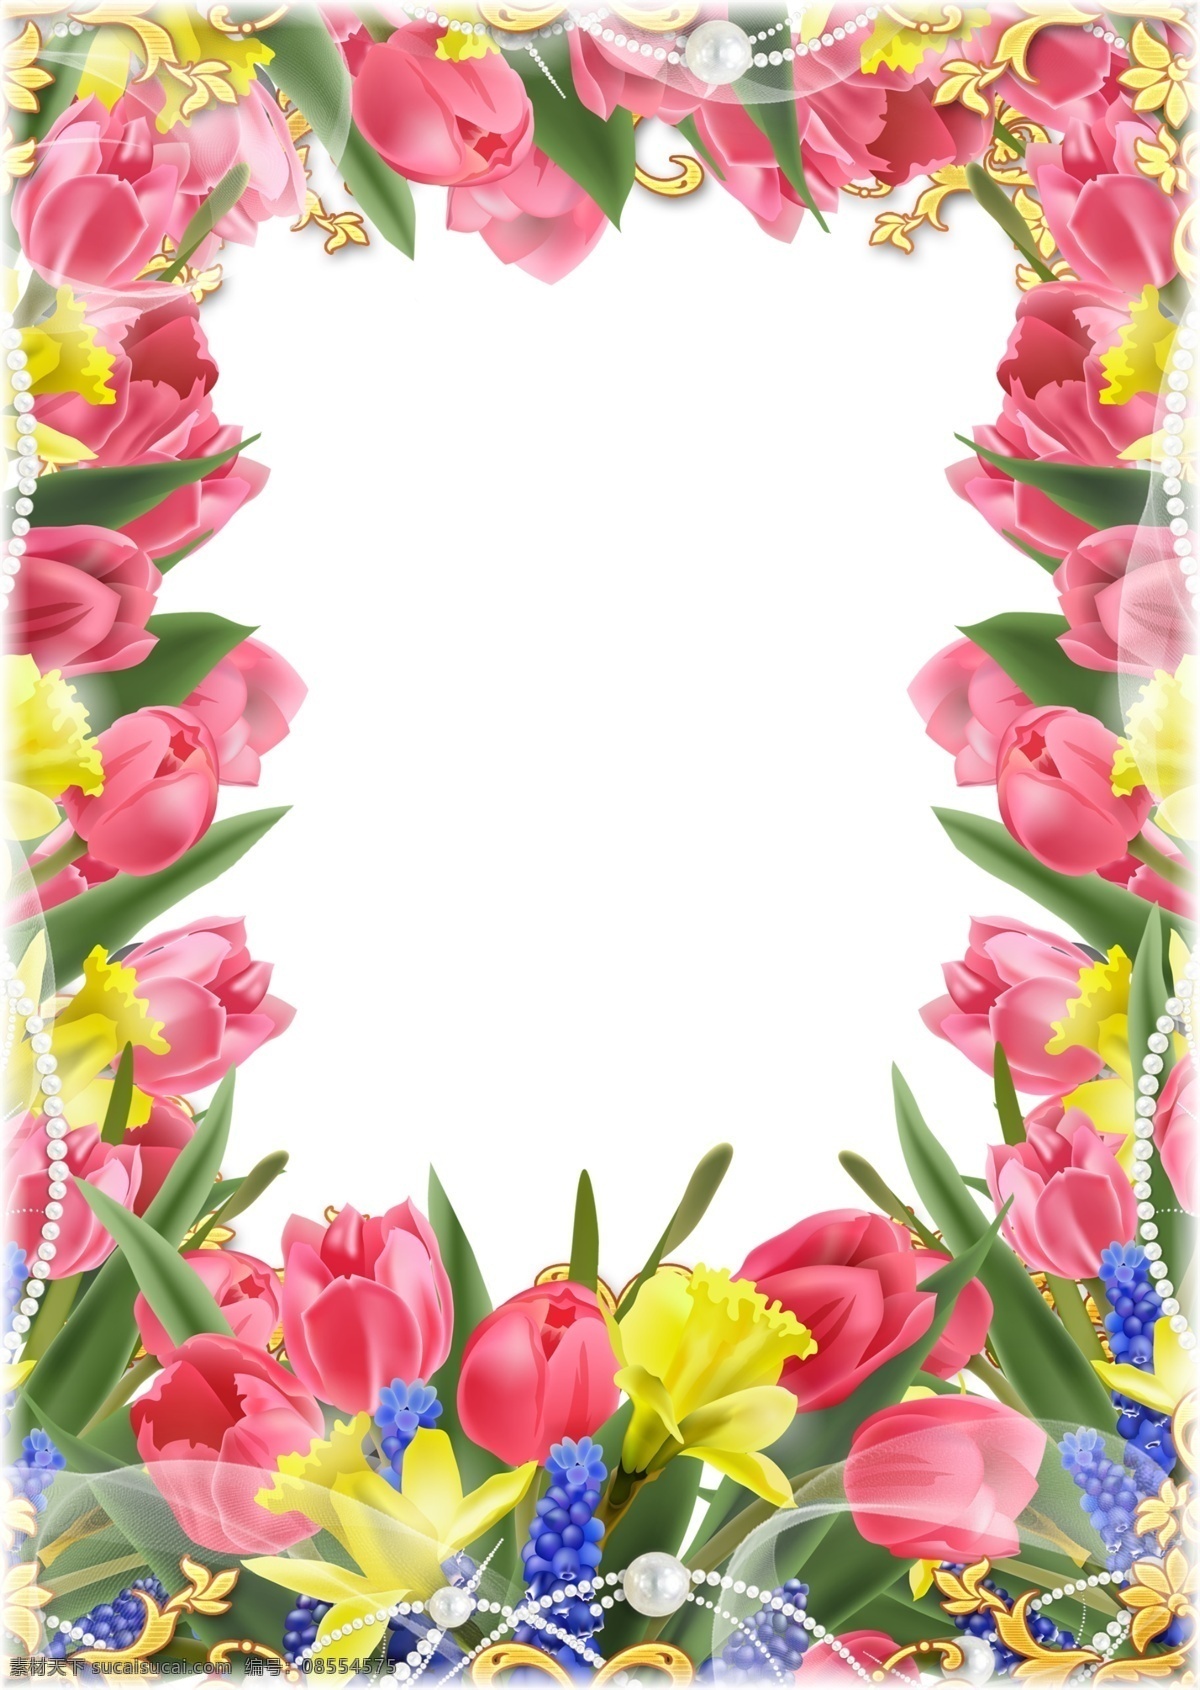 花朵背景插图 花朵 背景 插图 边框 相框 花边 底纹边框 其他素材